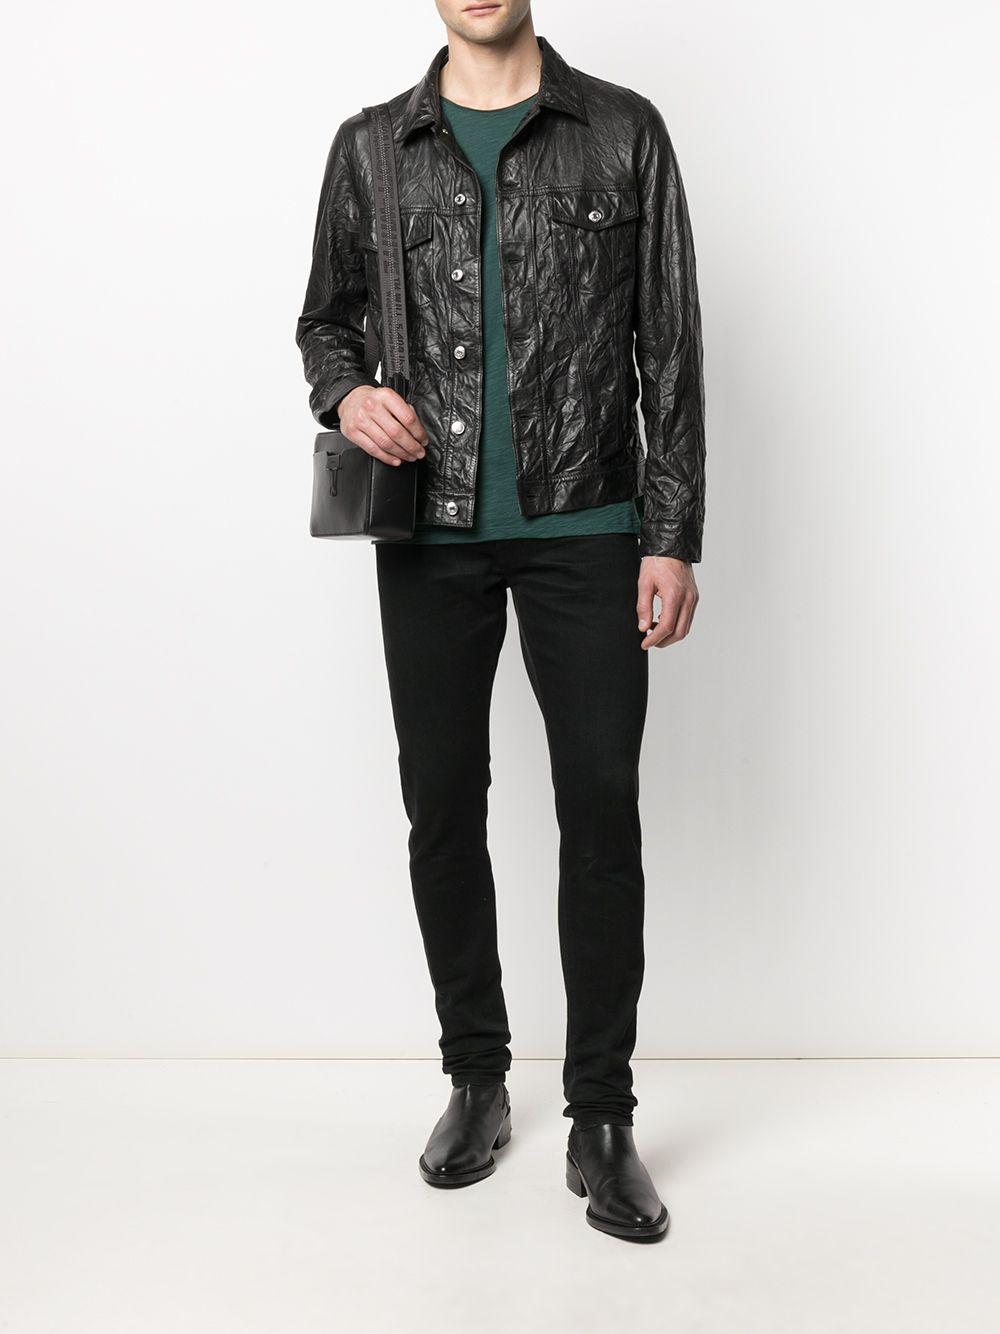 Zadig & Voltaire Base Crinkle Leather Jacket in Black for Men - Lyst